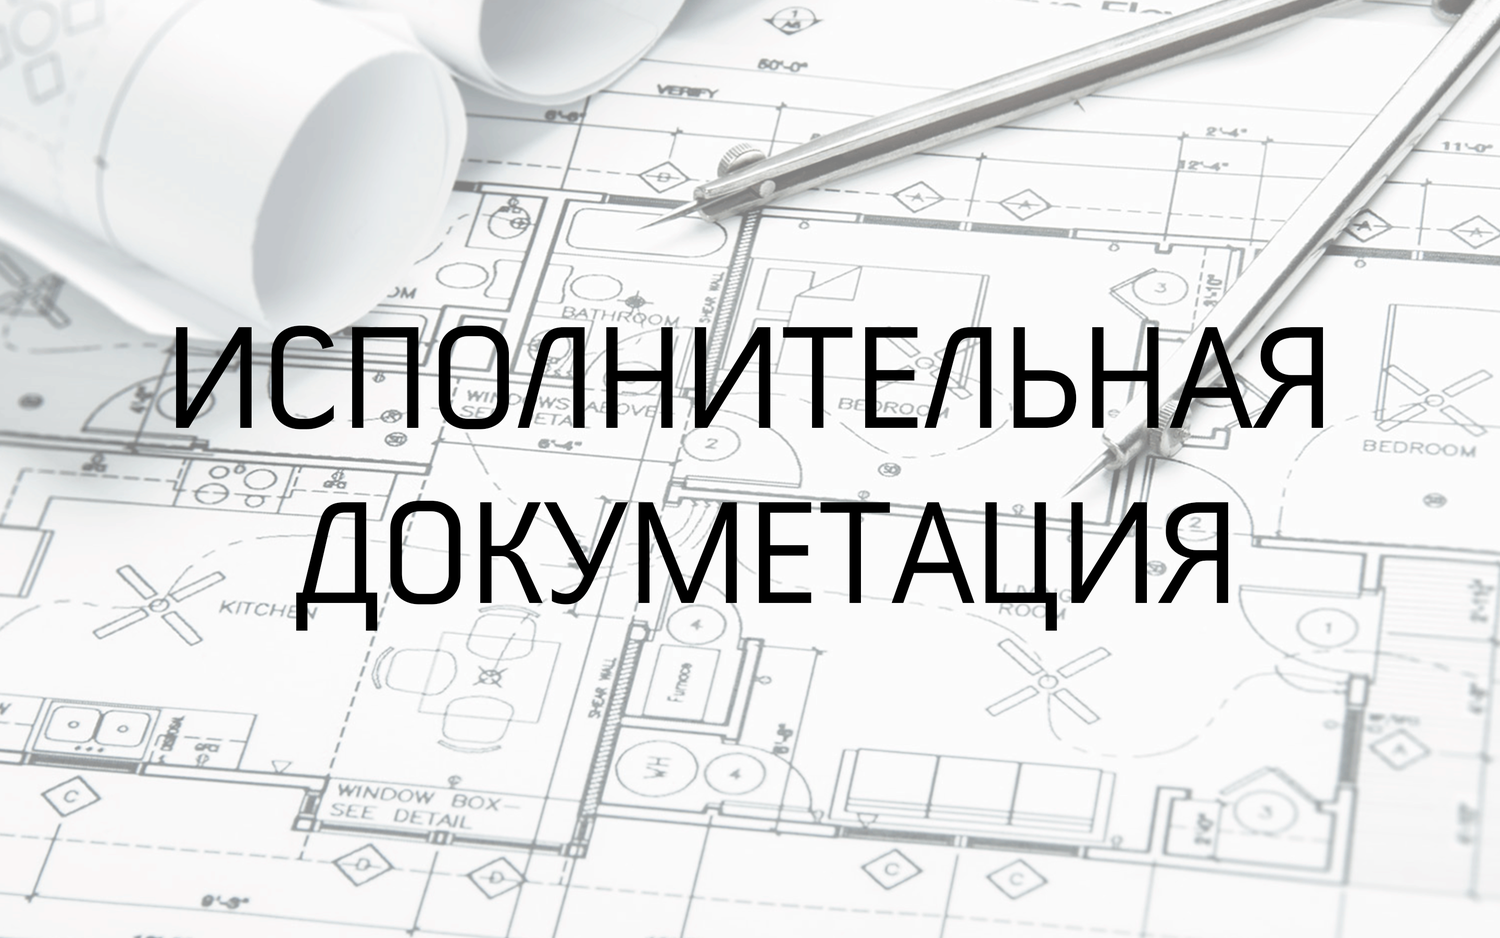 Сделать исполнительную документацию в Саратове: 38 исполнителей с отзывами и ценами на Яндекс Услугах.